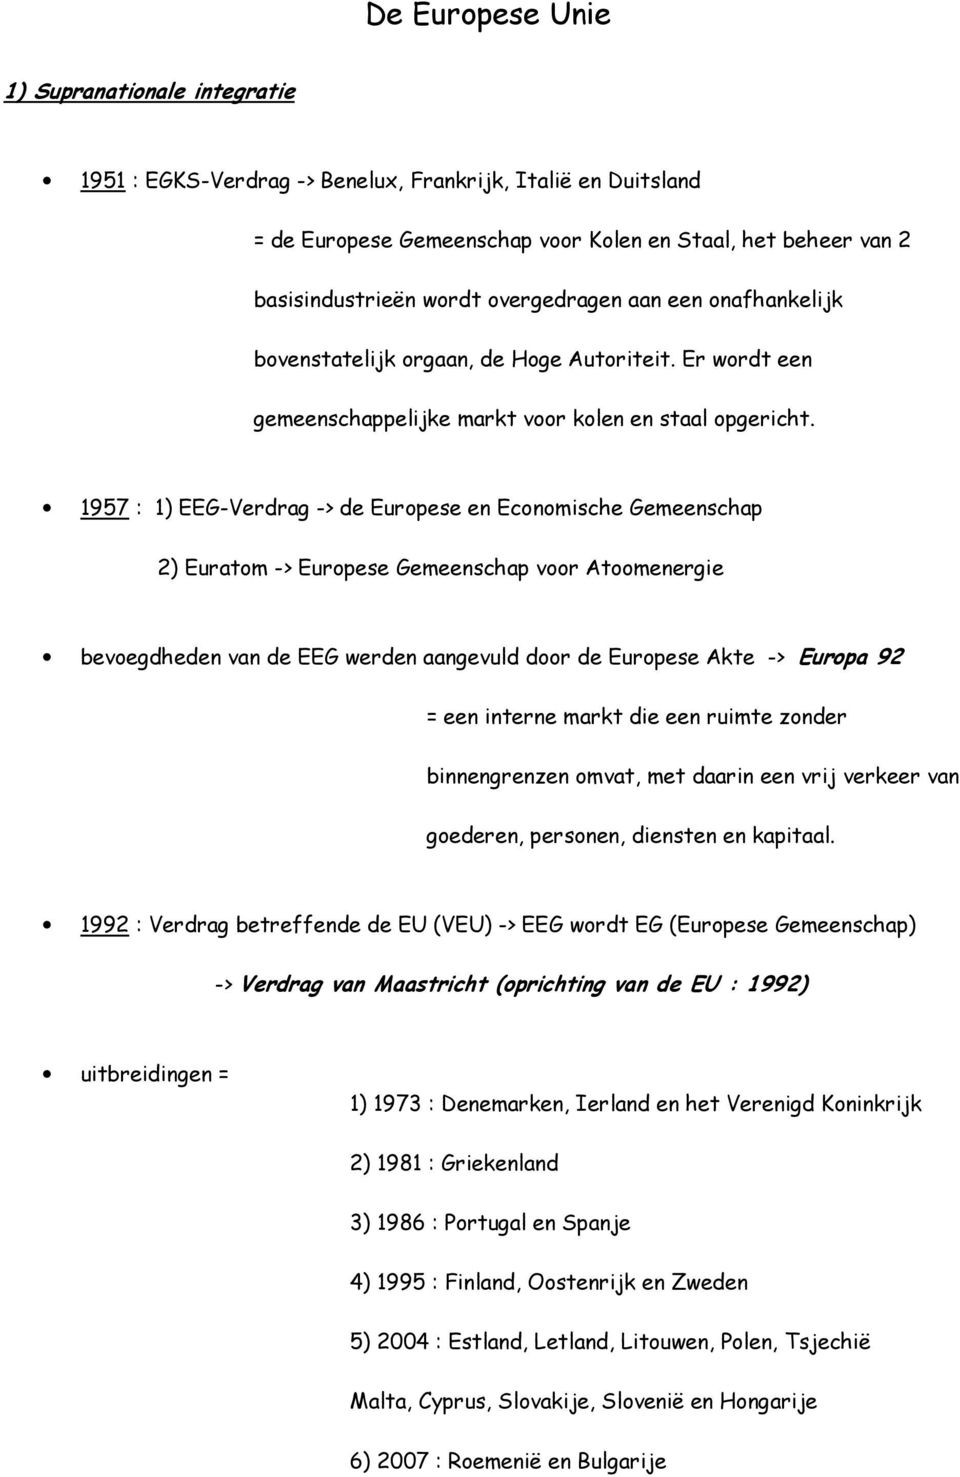 1957 : 1) EEG-Verdrag -> de Europese en Economische Gemeenschap 2) Euratom -> Europese Gemeenschap voor Atoomenergie bevoegdheden van de EEG werden aangevuld door de Europese Akte -> Europa 92 = een